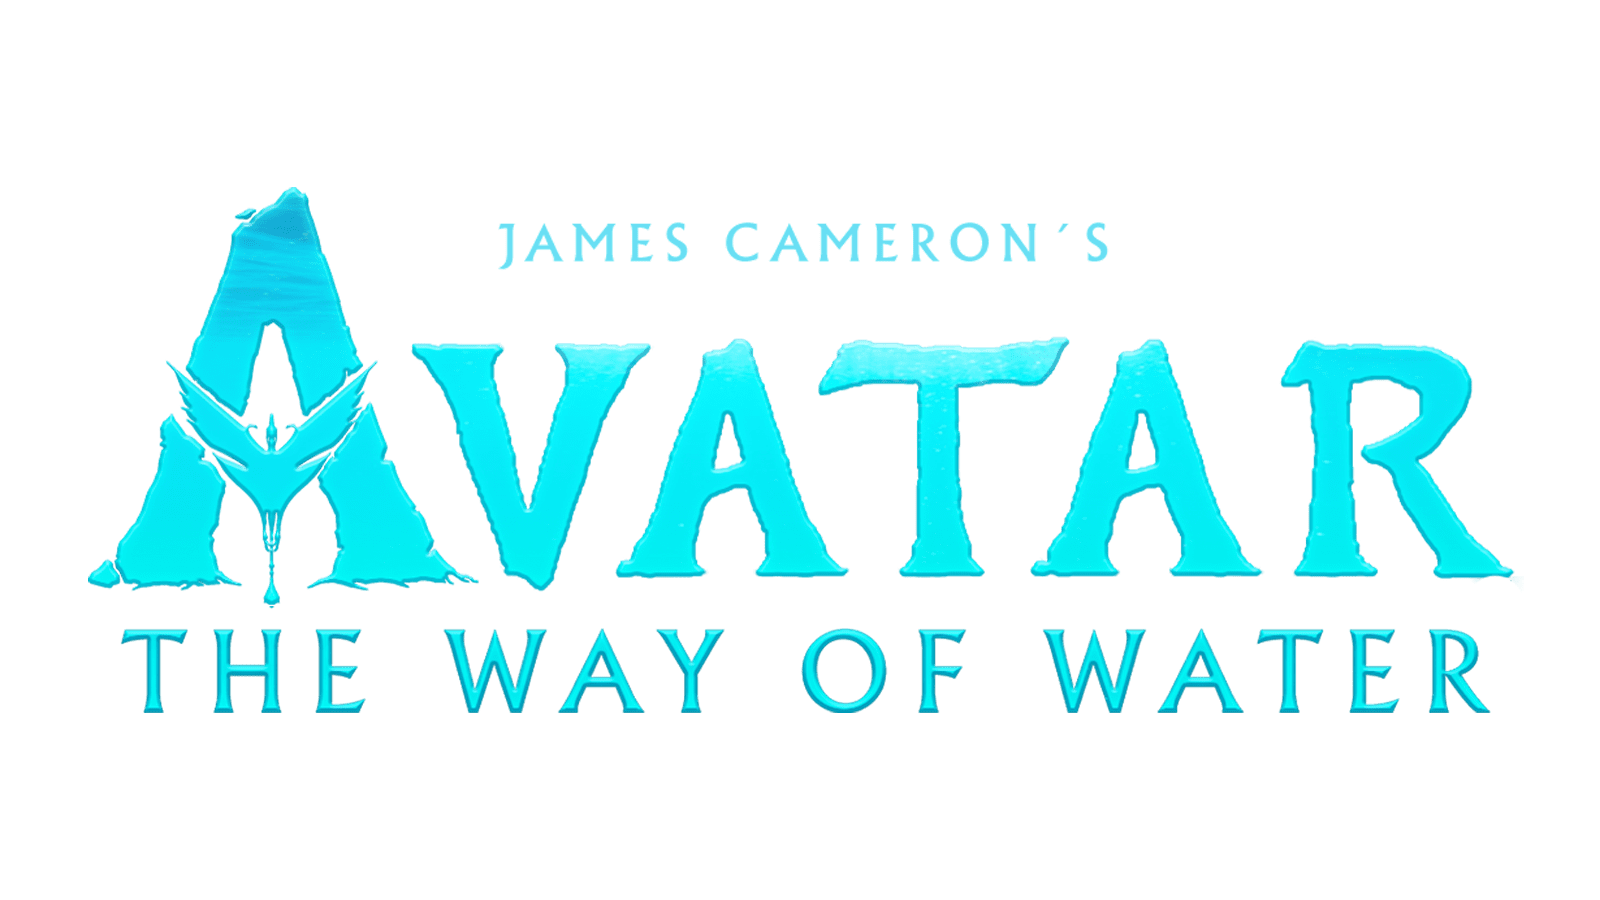 Tạo avatar logo  Tổng hợp nhiều mẫu thiết kế đẹp  Avatar Viết chữ Thiết  kế